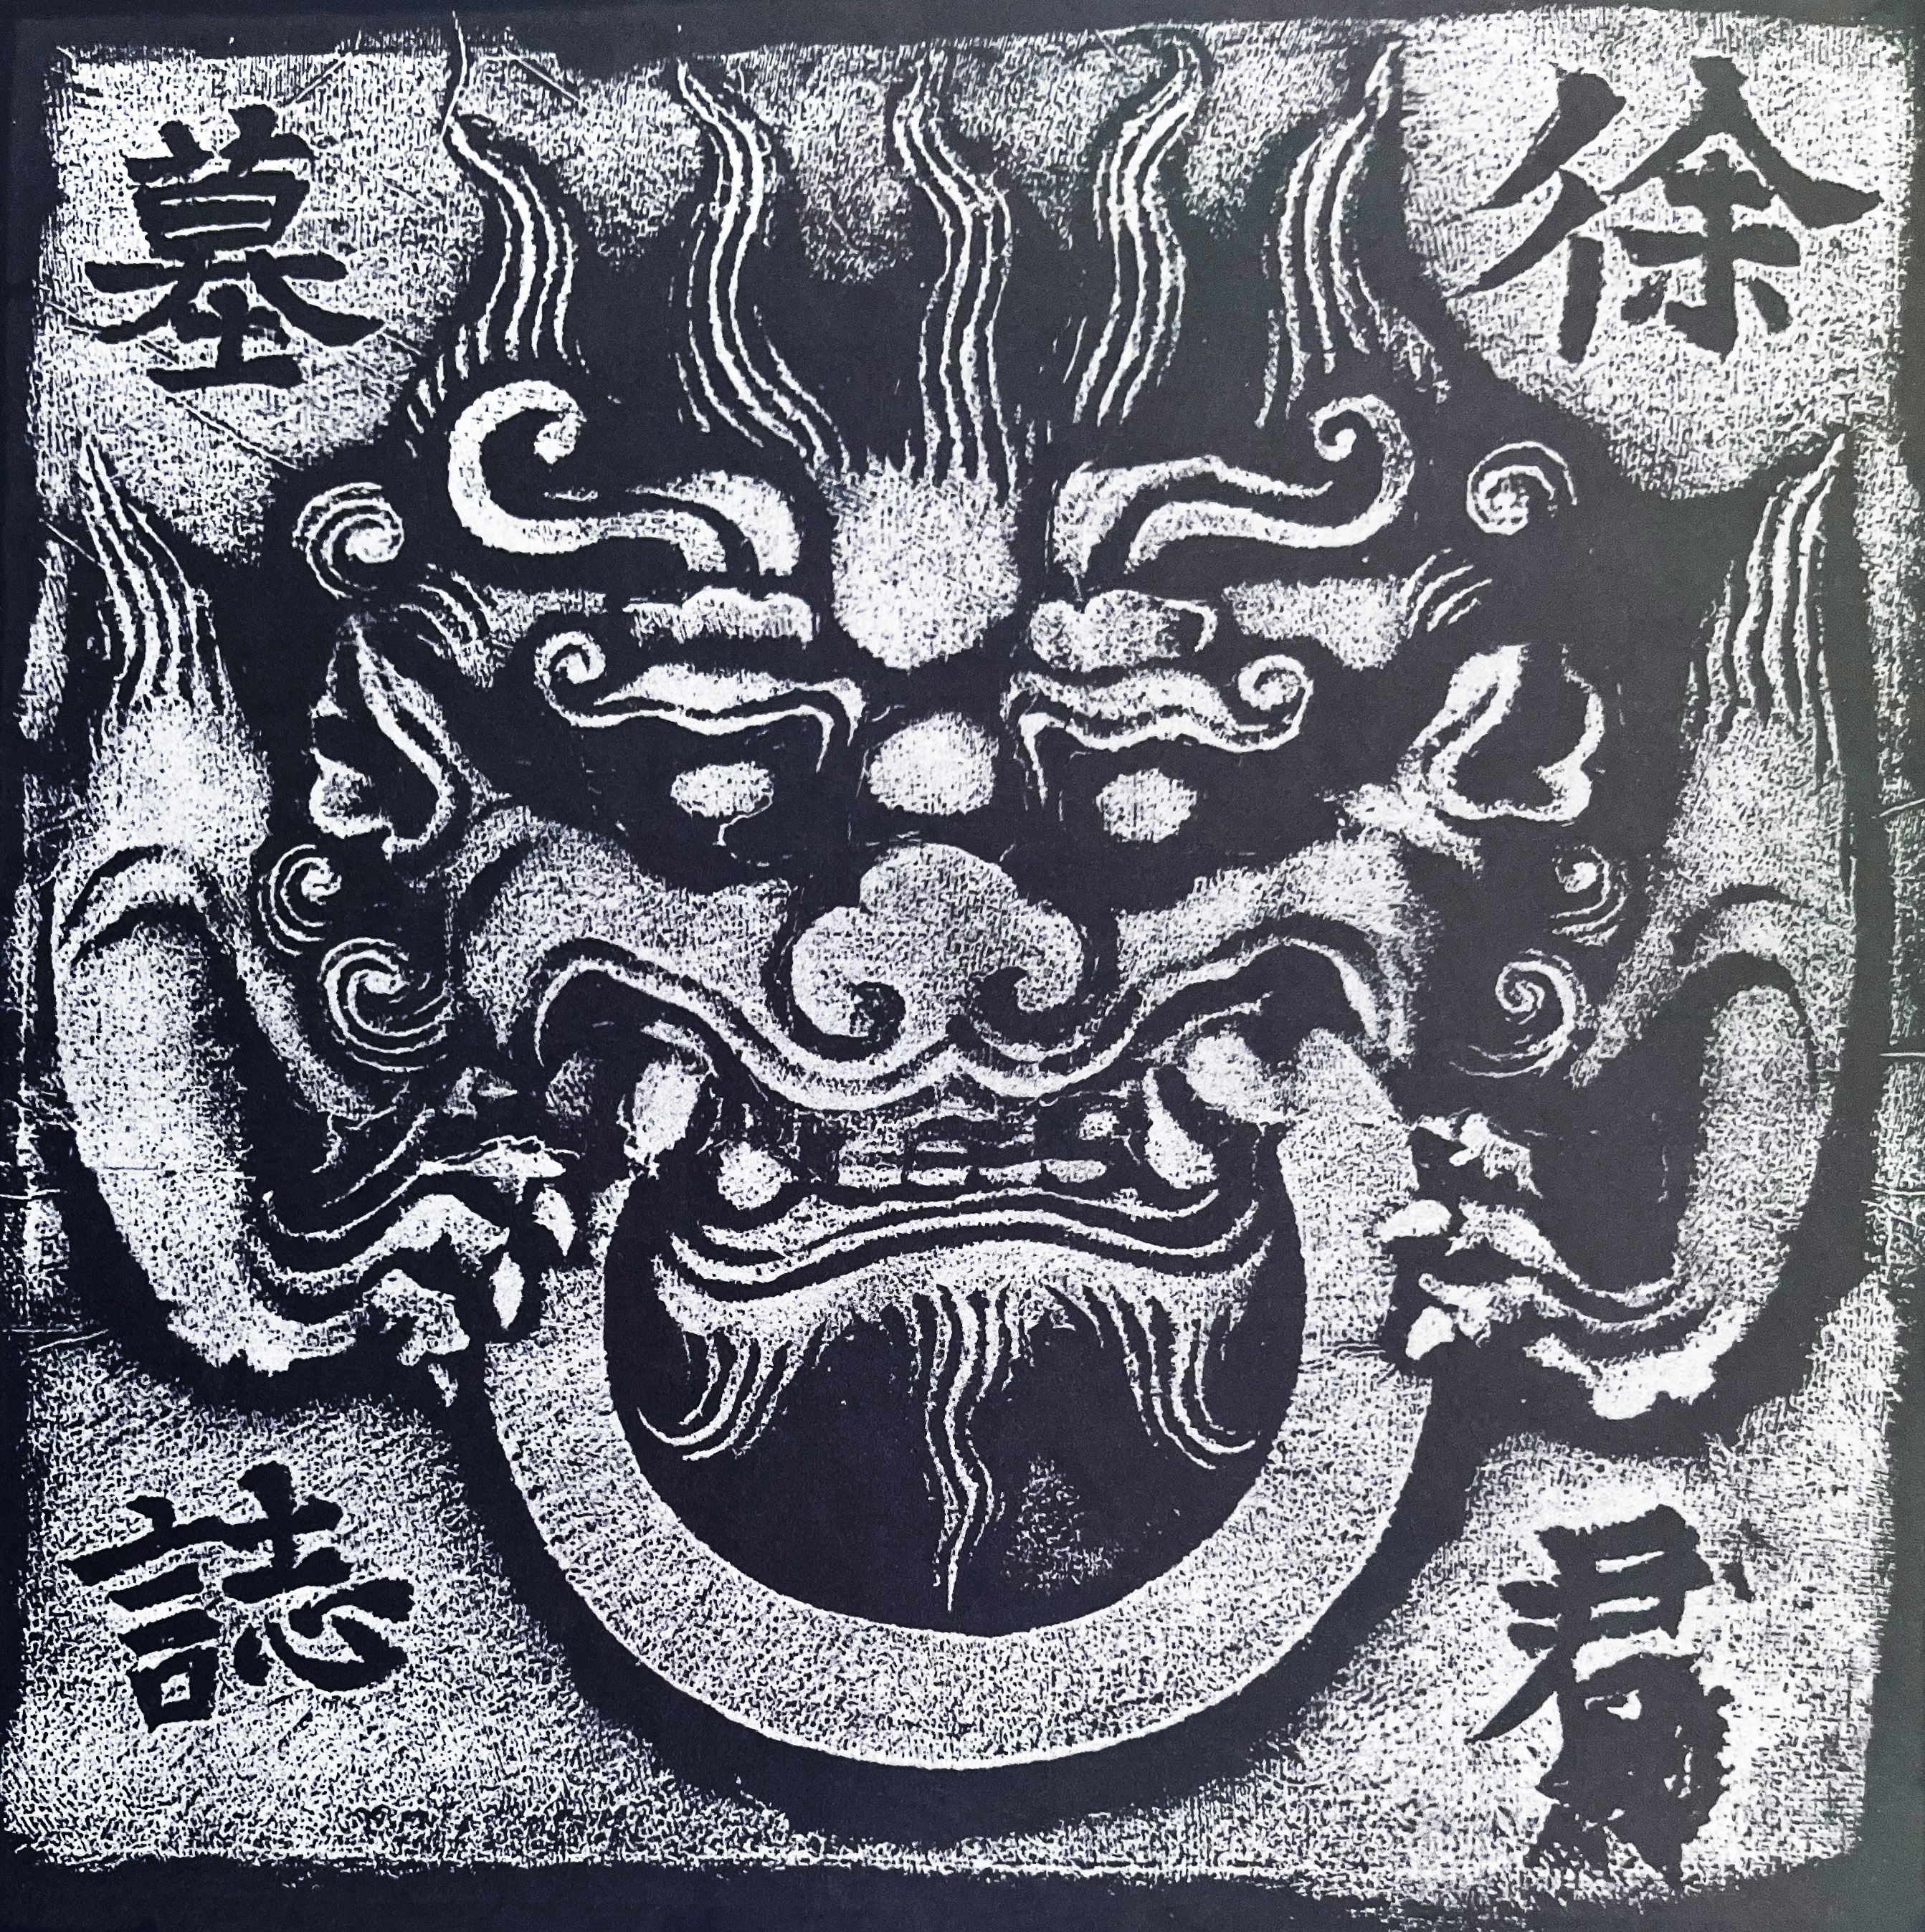 751_Tang Xu Daoqi muzhiming_cover_giant-beast-head.jpg